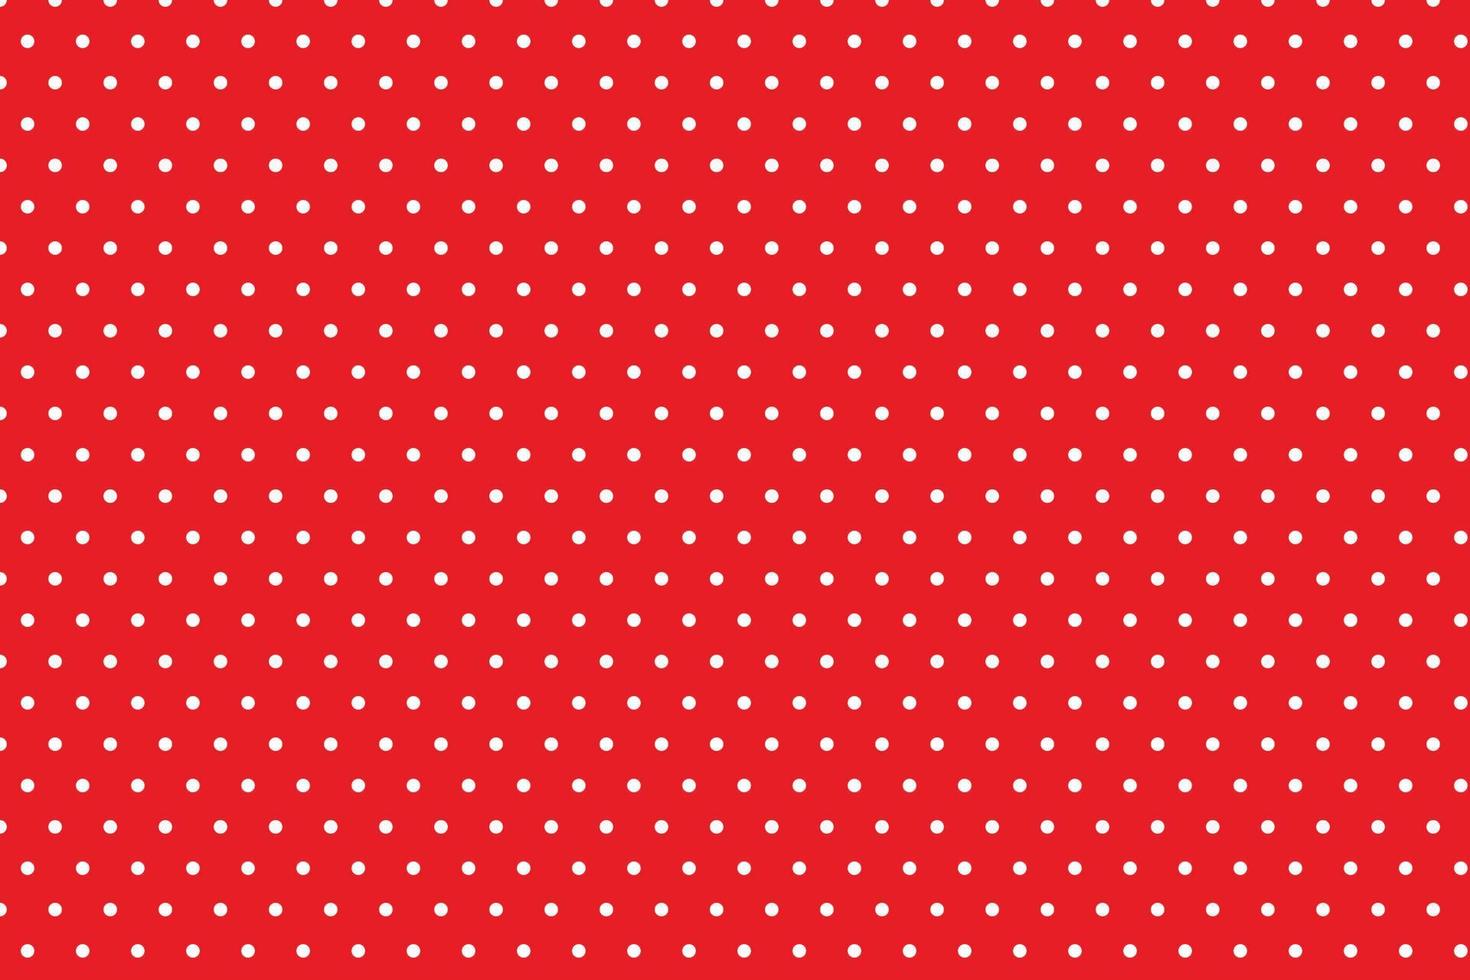 rood achtergrond wit polka dots patroon ontwerp, geschikt voor jurken, papier, tafelkleden, overhemden. vector